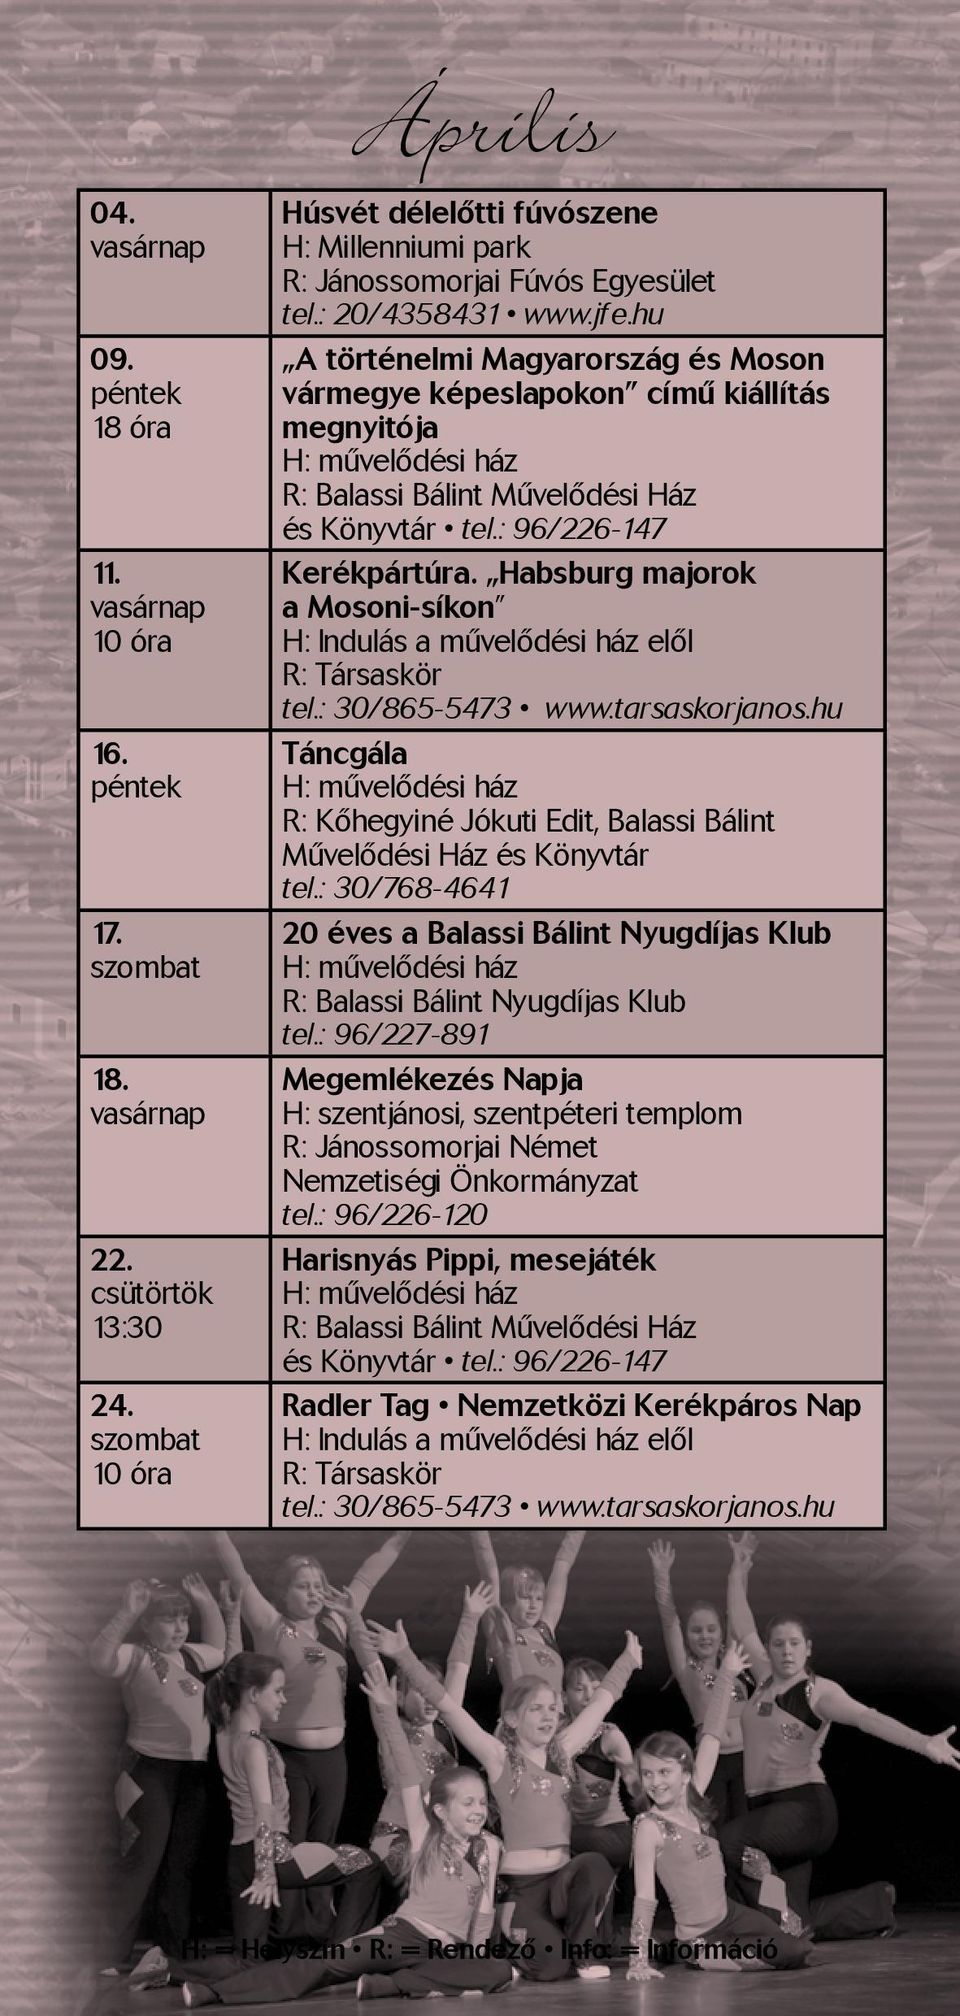 Habsburg majorok a Mosoni-síkon Táncgála R: Kőhegyiné Jókuti Edit, Balassi Bálint Művelődési Ház és Könyvtár tel.